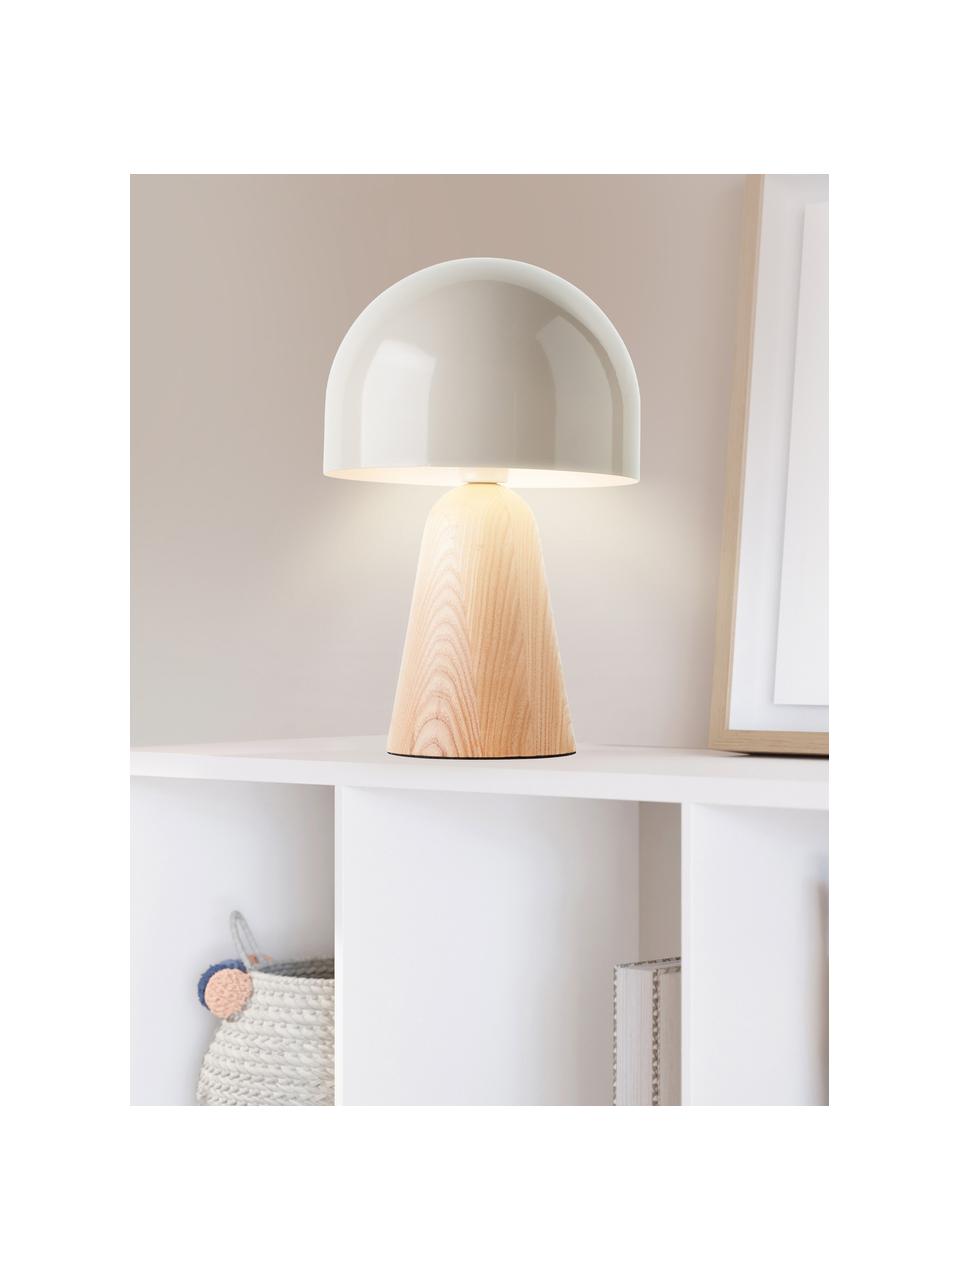 Kleine tafellamp Nalam, Lampenkap: gecoat metaal, Lampvoet: hout, FSC-gecertificeerd, Lichtbeige, helder hout, Ø 20 x H 31 cm